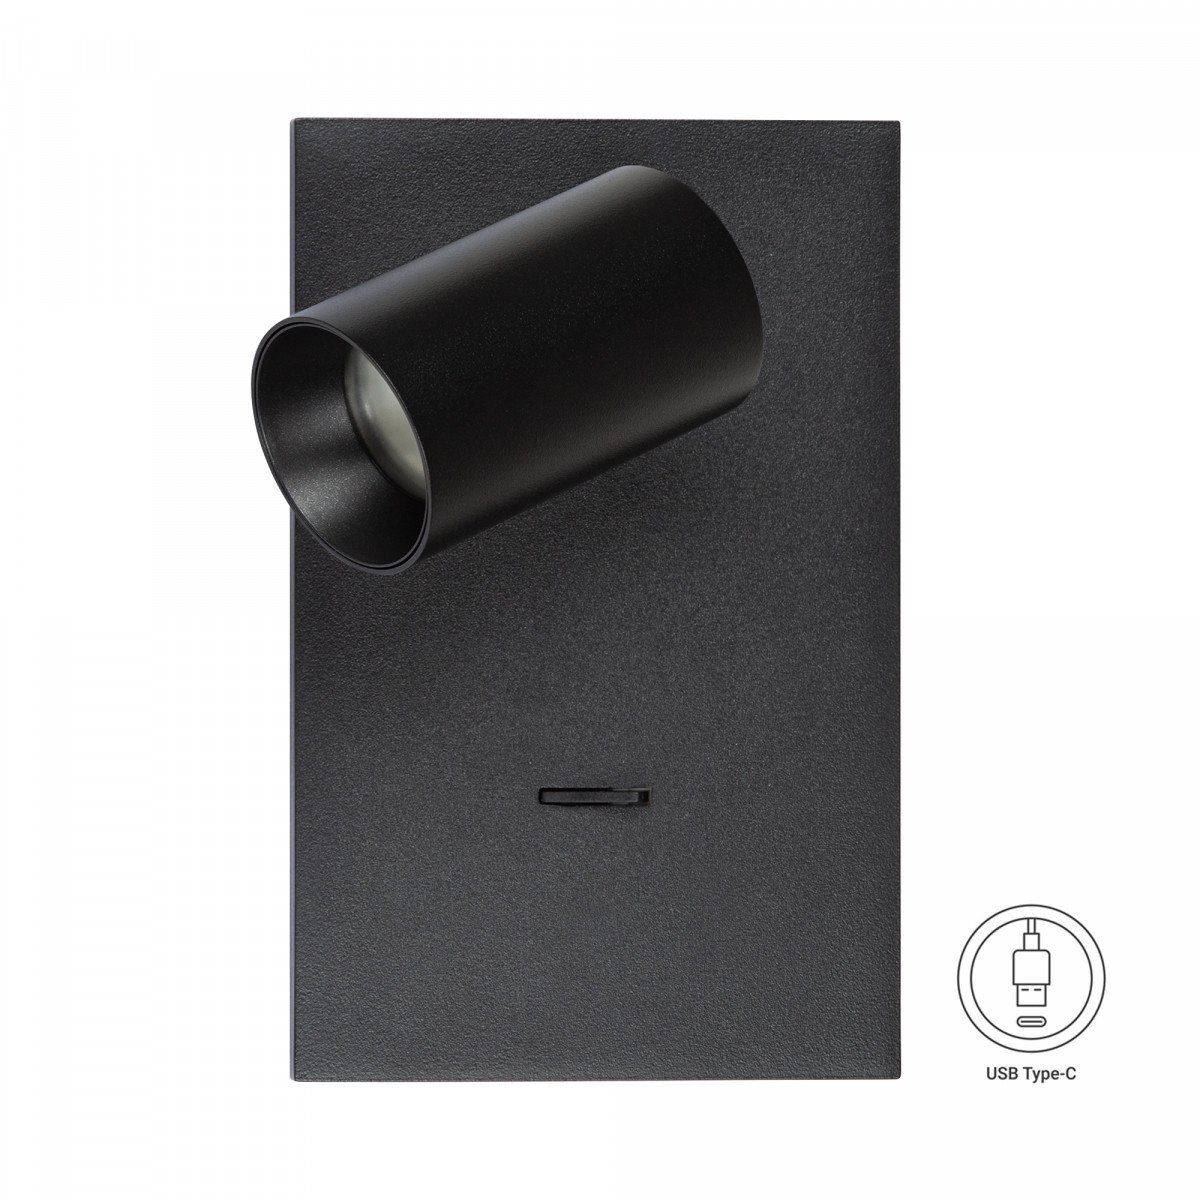 Moderner Wandspot Mila mit USB-Anschlüssen und Ein/Aus-Schalter in schwarzer Farbe